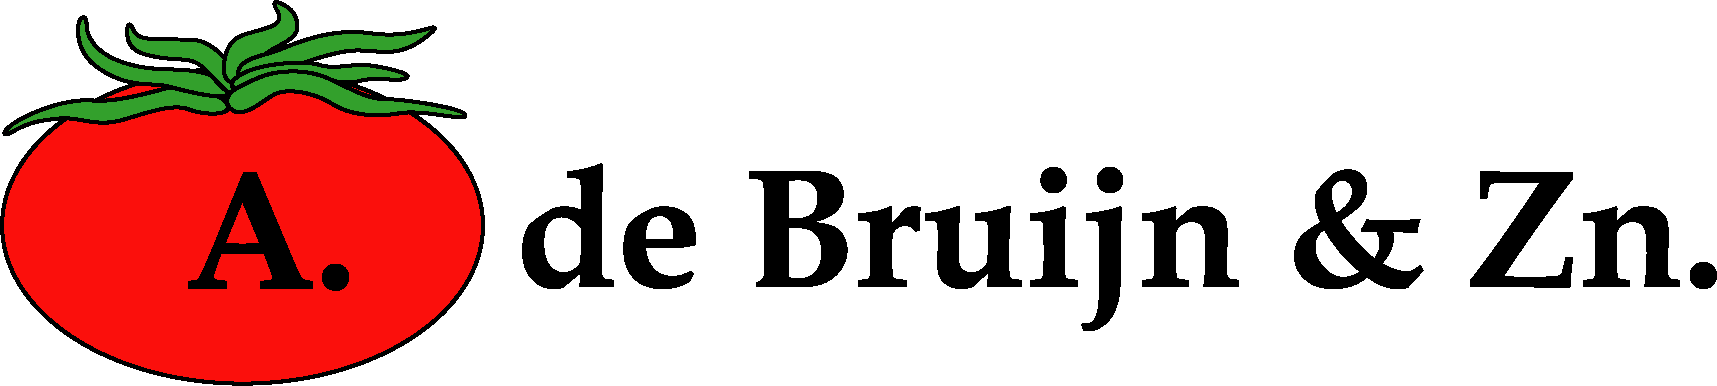 Anton Ammerlaan - logo